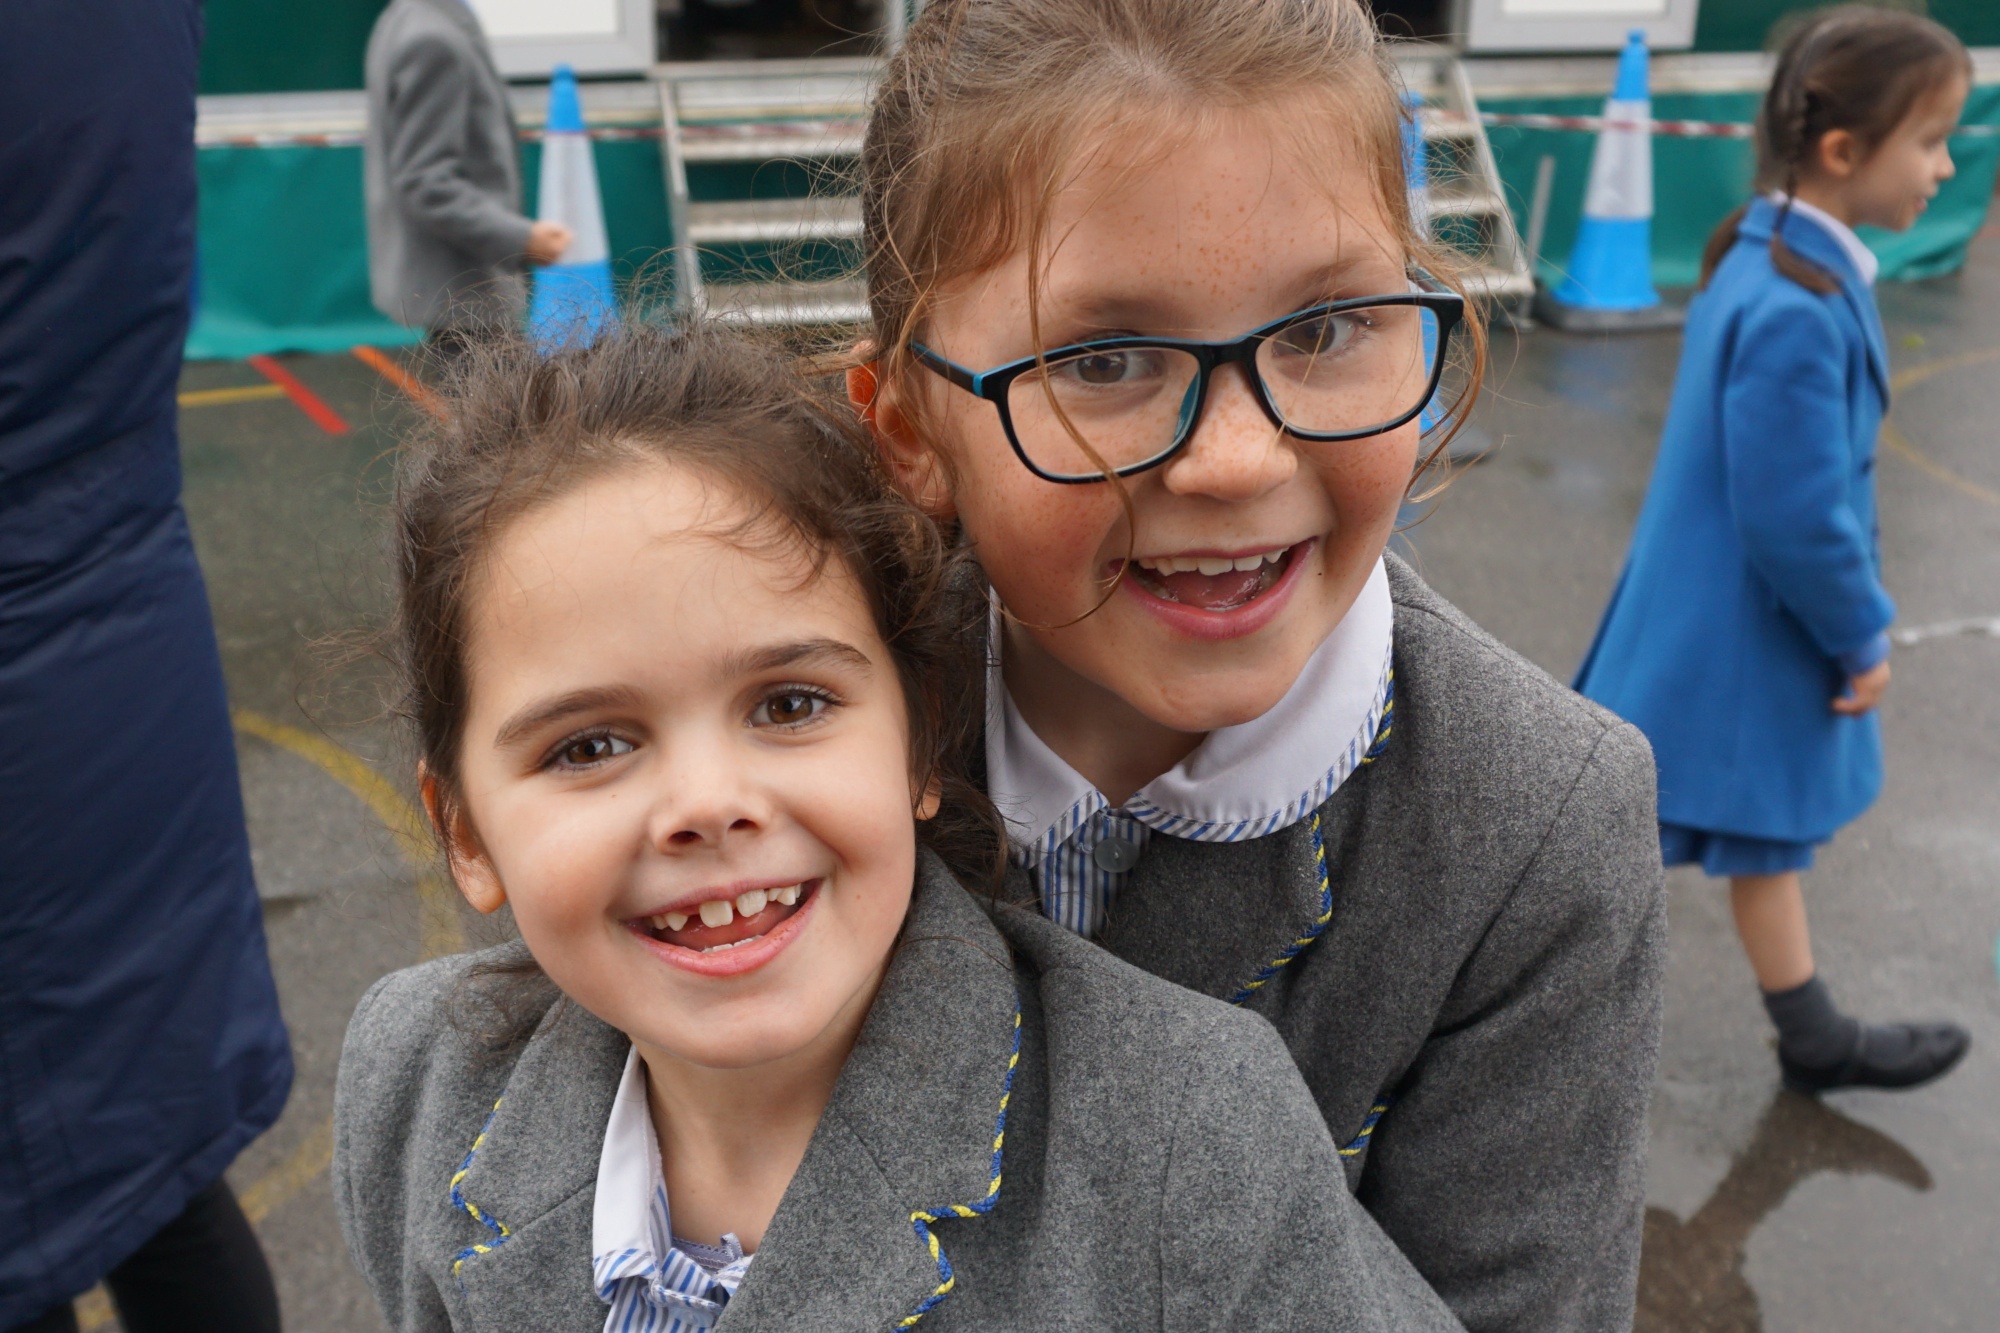 School children at Park School, Bournemouth